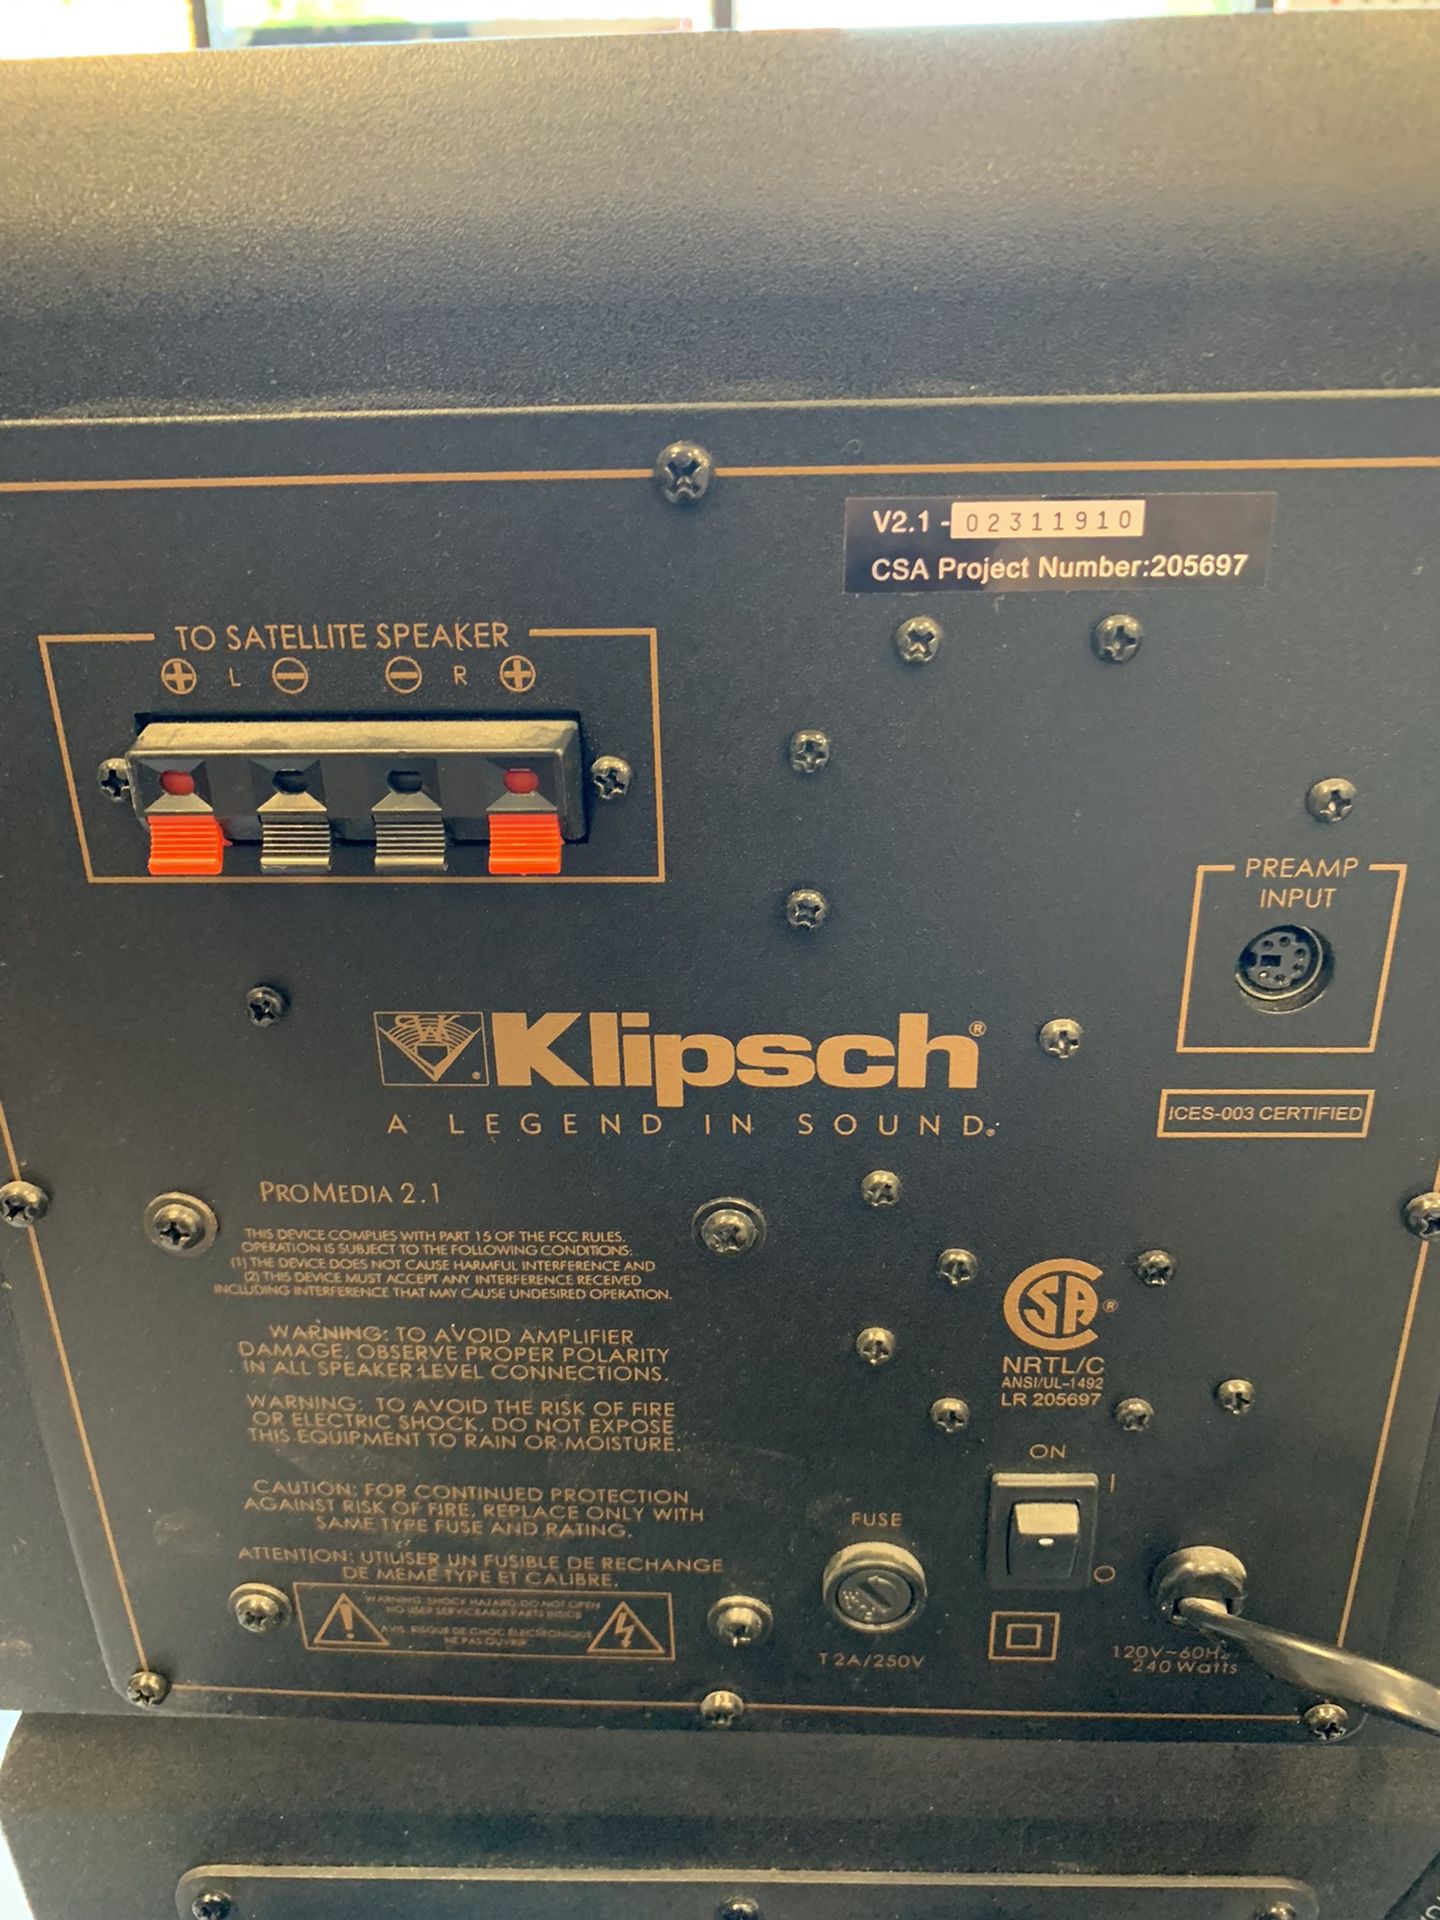 Klipsch 3pc Speaker Set w/powered Subwoofer $100